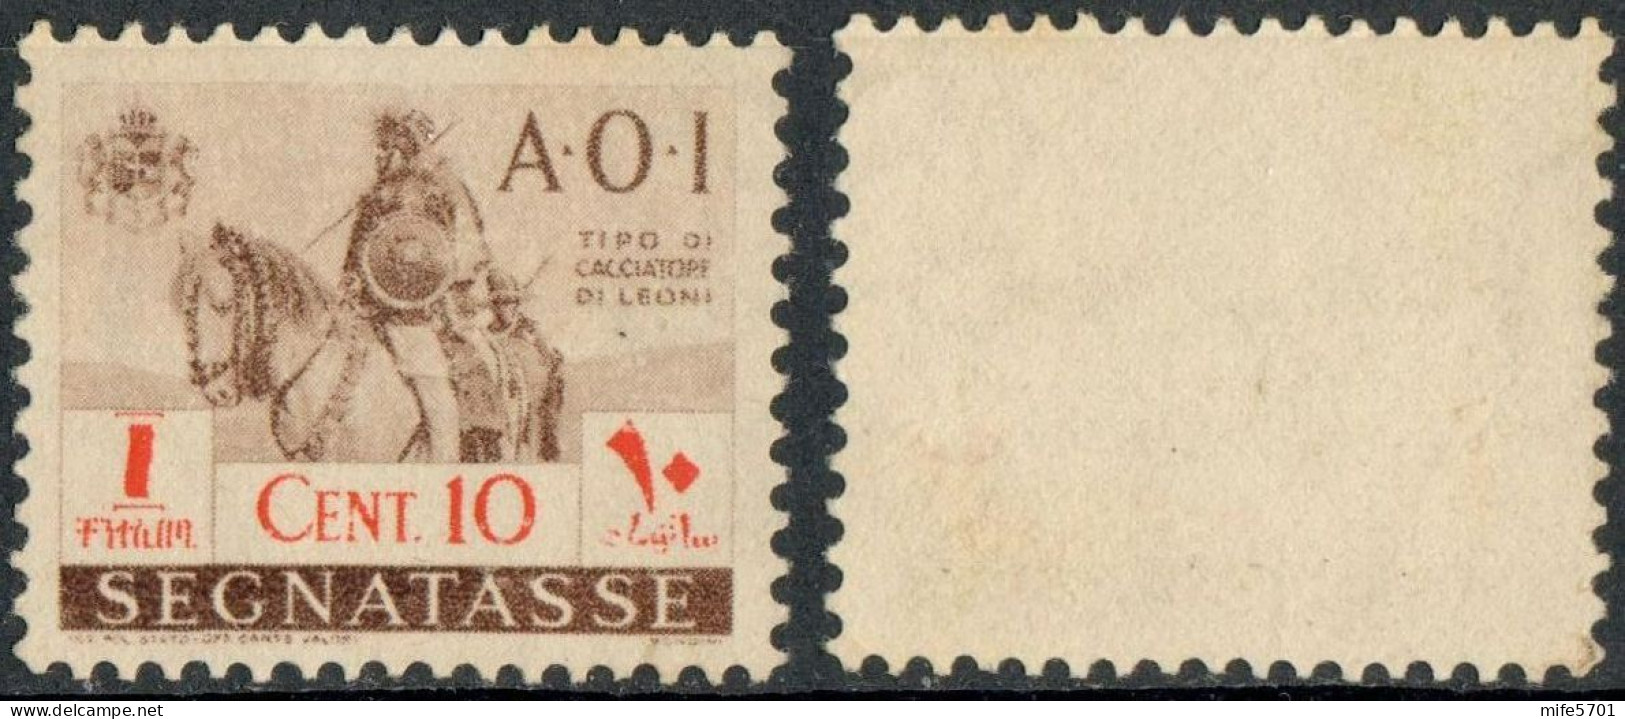 REGNO AFRICA ORIENTALE ITALIANA 1941 A.O.I. SEGNATASSE 'CACCIATORE DI LEONI A CAVALLO' C. 10 SENZA GOMMA (*) SASSONE 11 - Africa Orientale Italiana